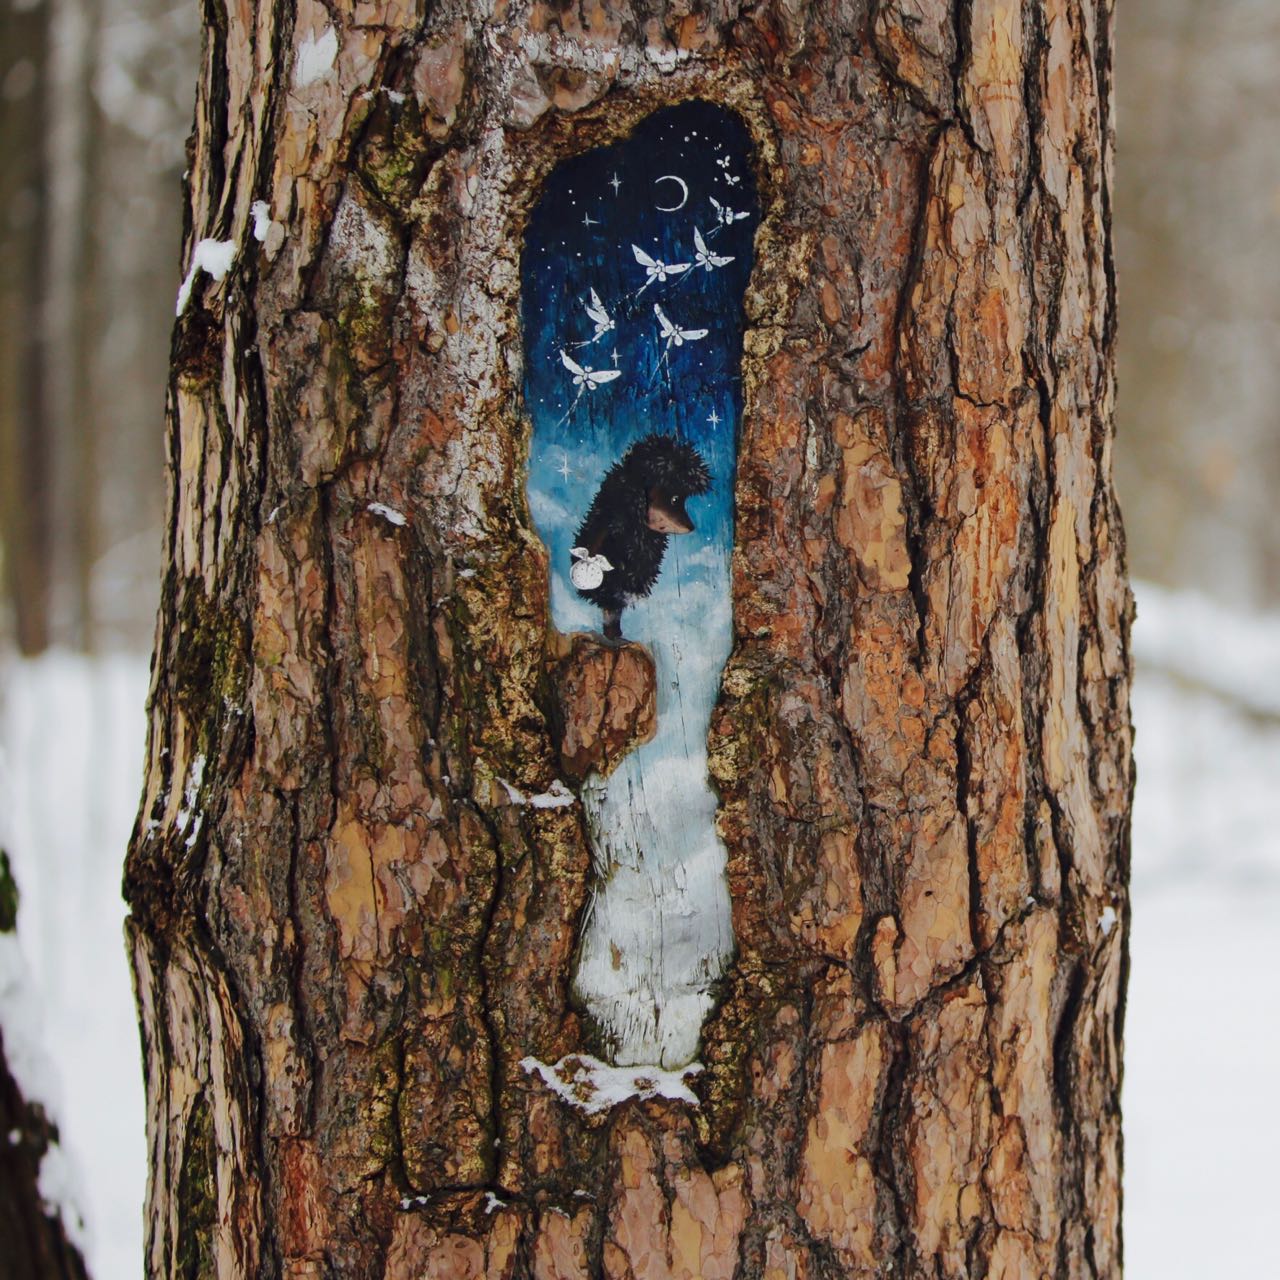 Природа и искусство: «сказочные порталы» на деревьях появятся в городе - фото 1